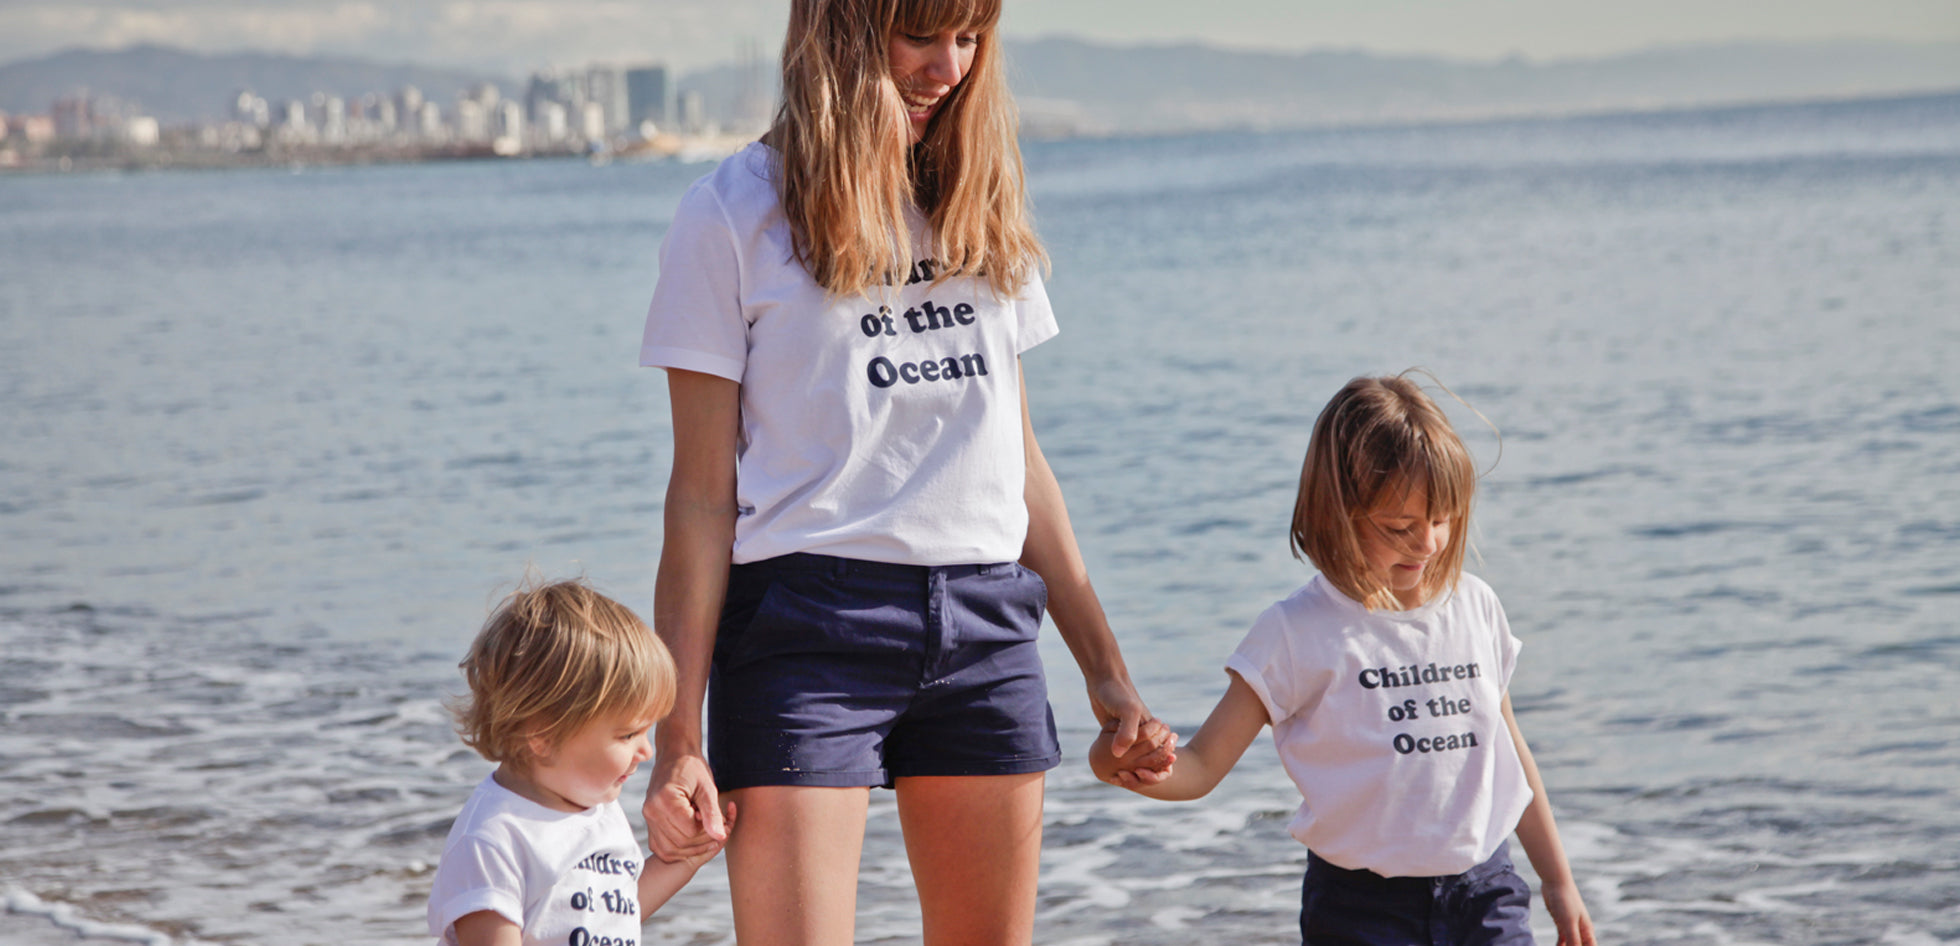 Children of the Ocean